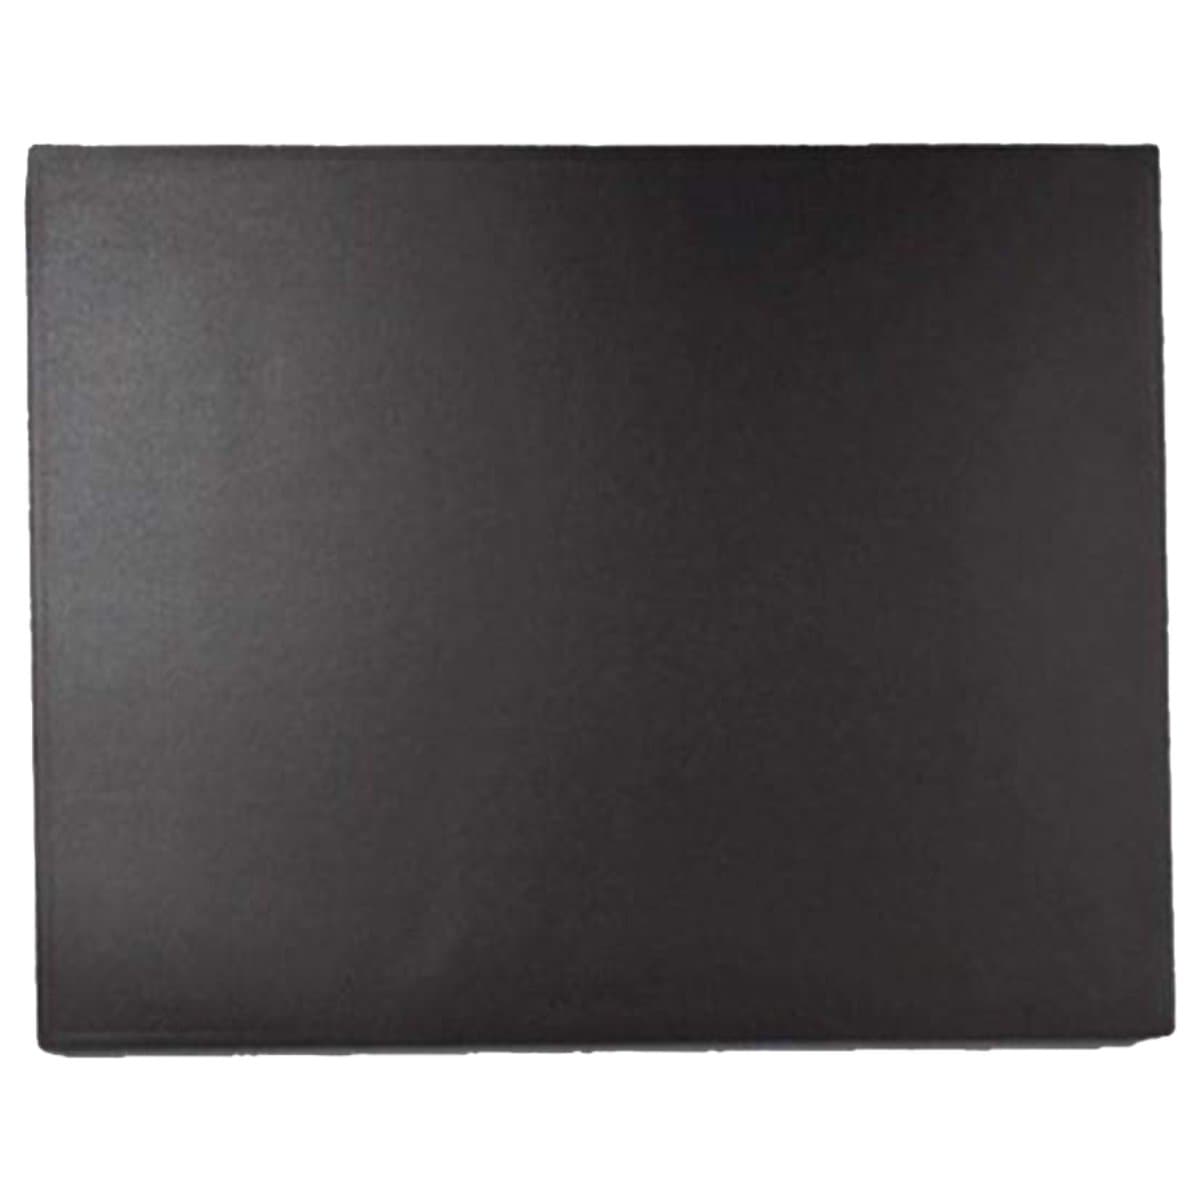 Laufer Durella Desk Mat, 65 x 52 cm, Black